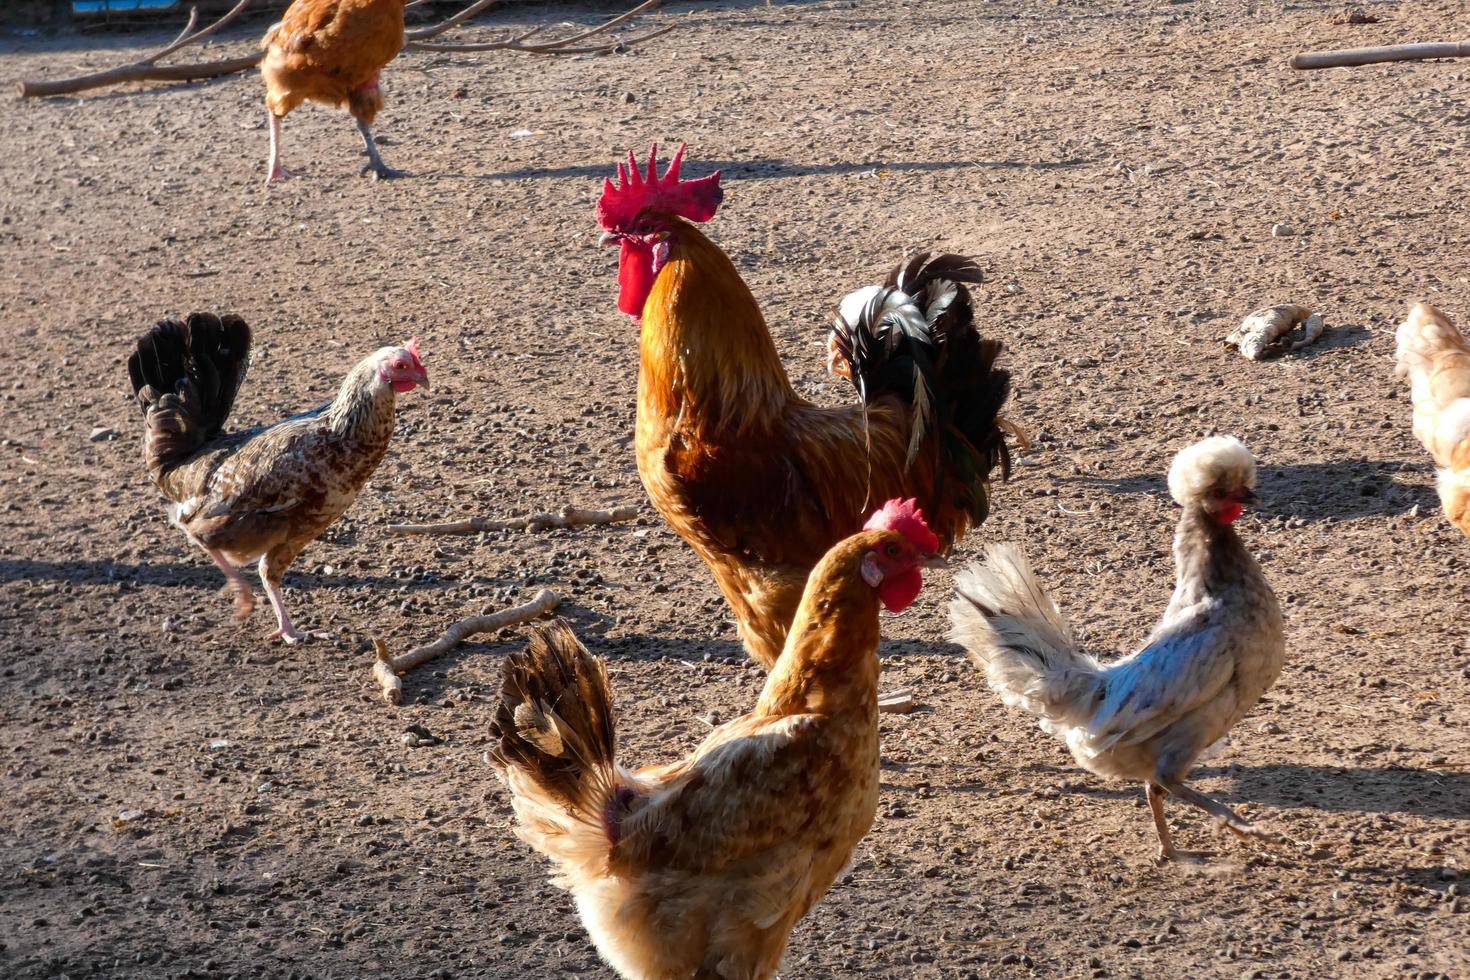 galos e galinhas caipiras em uma fazenda foto